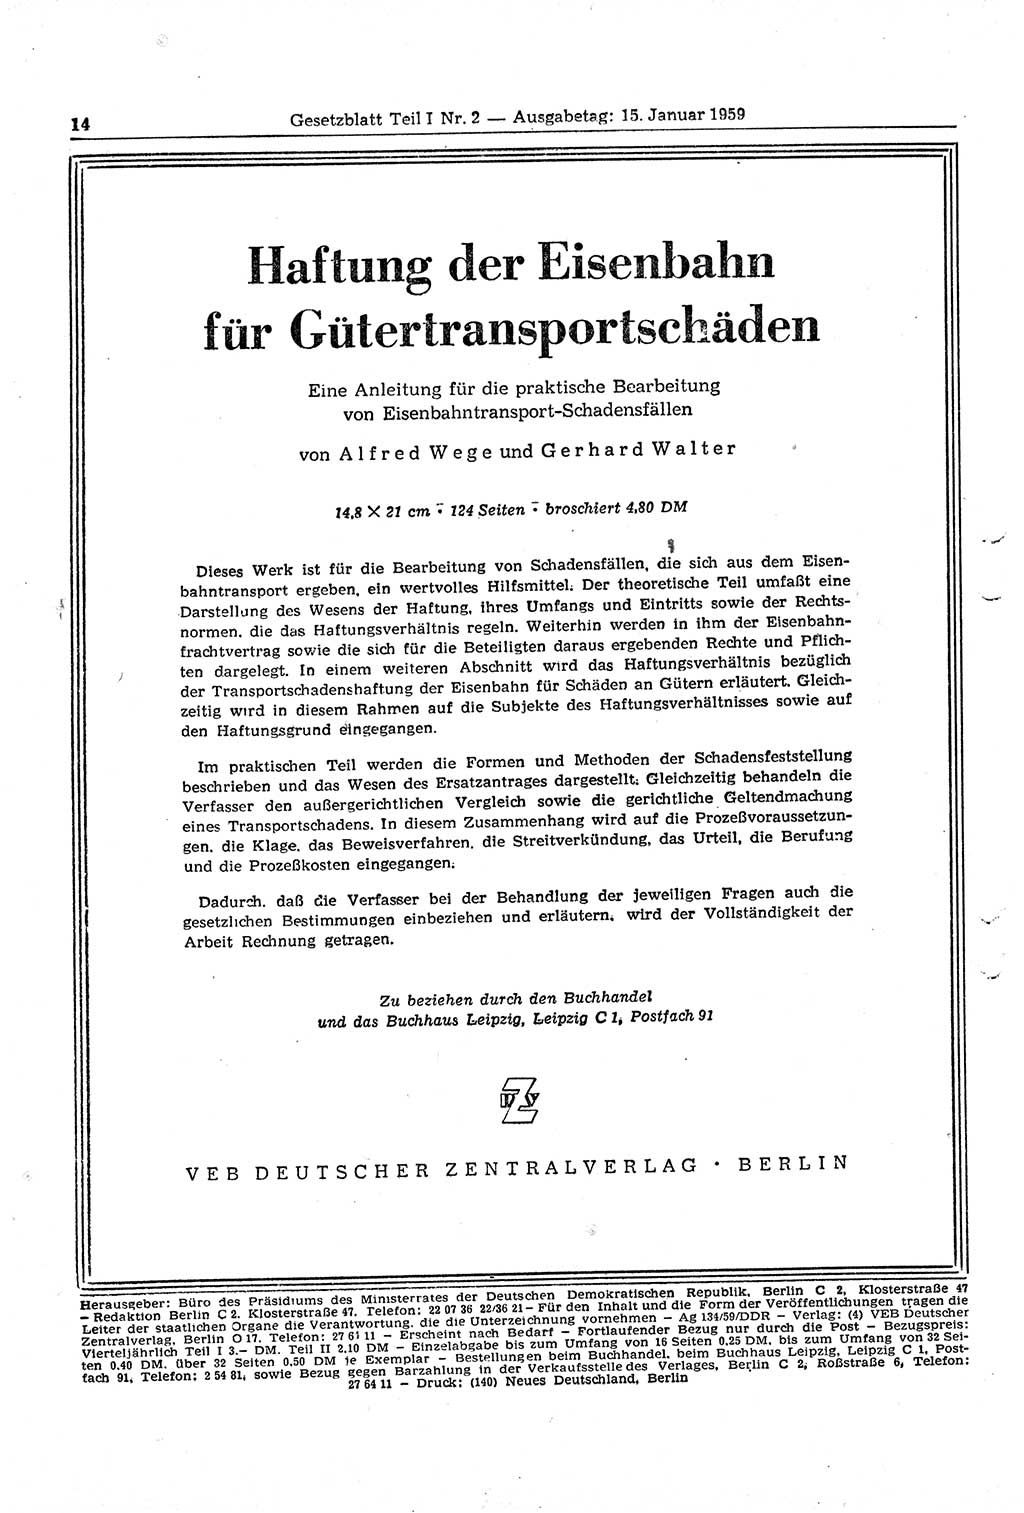 Gesetzblatt (GBl.) der Deutschen Demokratischen Republik (DDR) Teil Ⅰ 1959, Seite 14 (GBl. DDR Ⅰ 1959, S. 14)